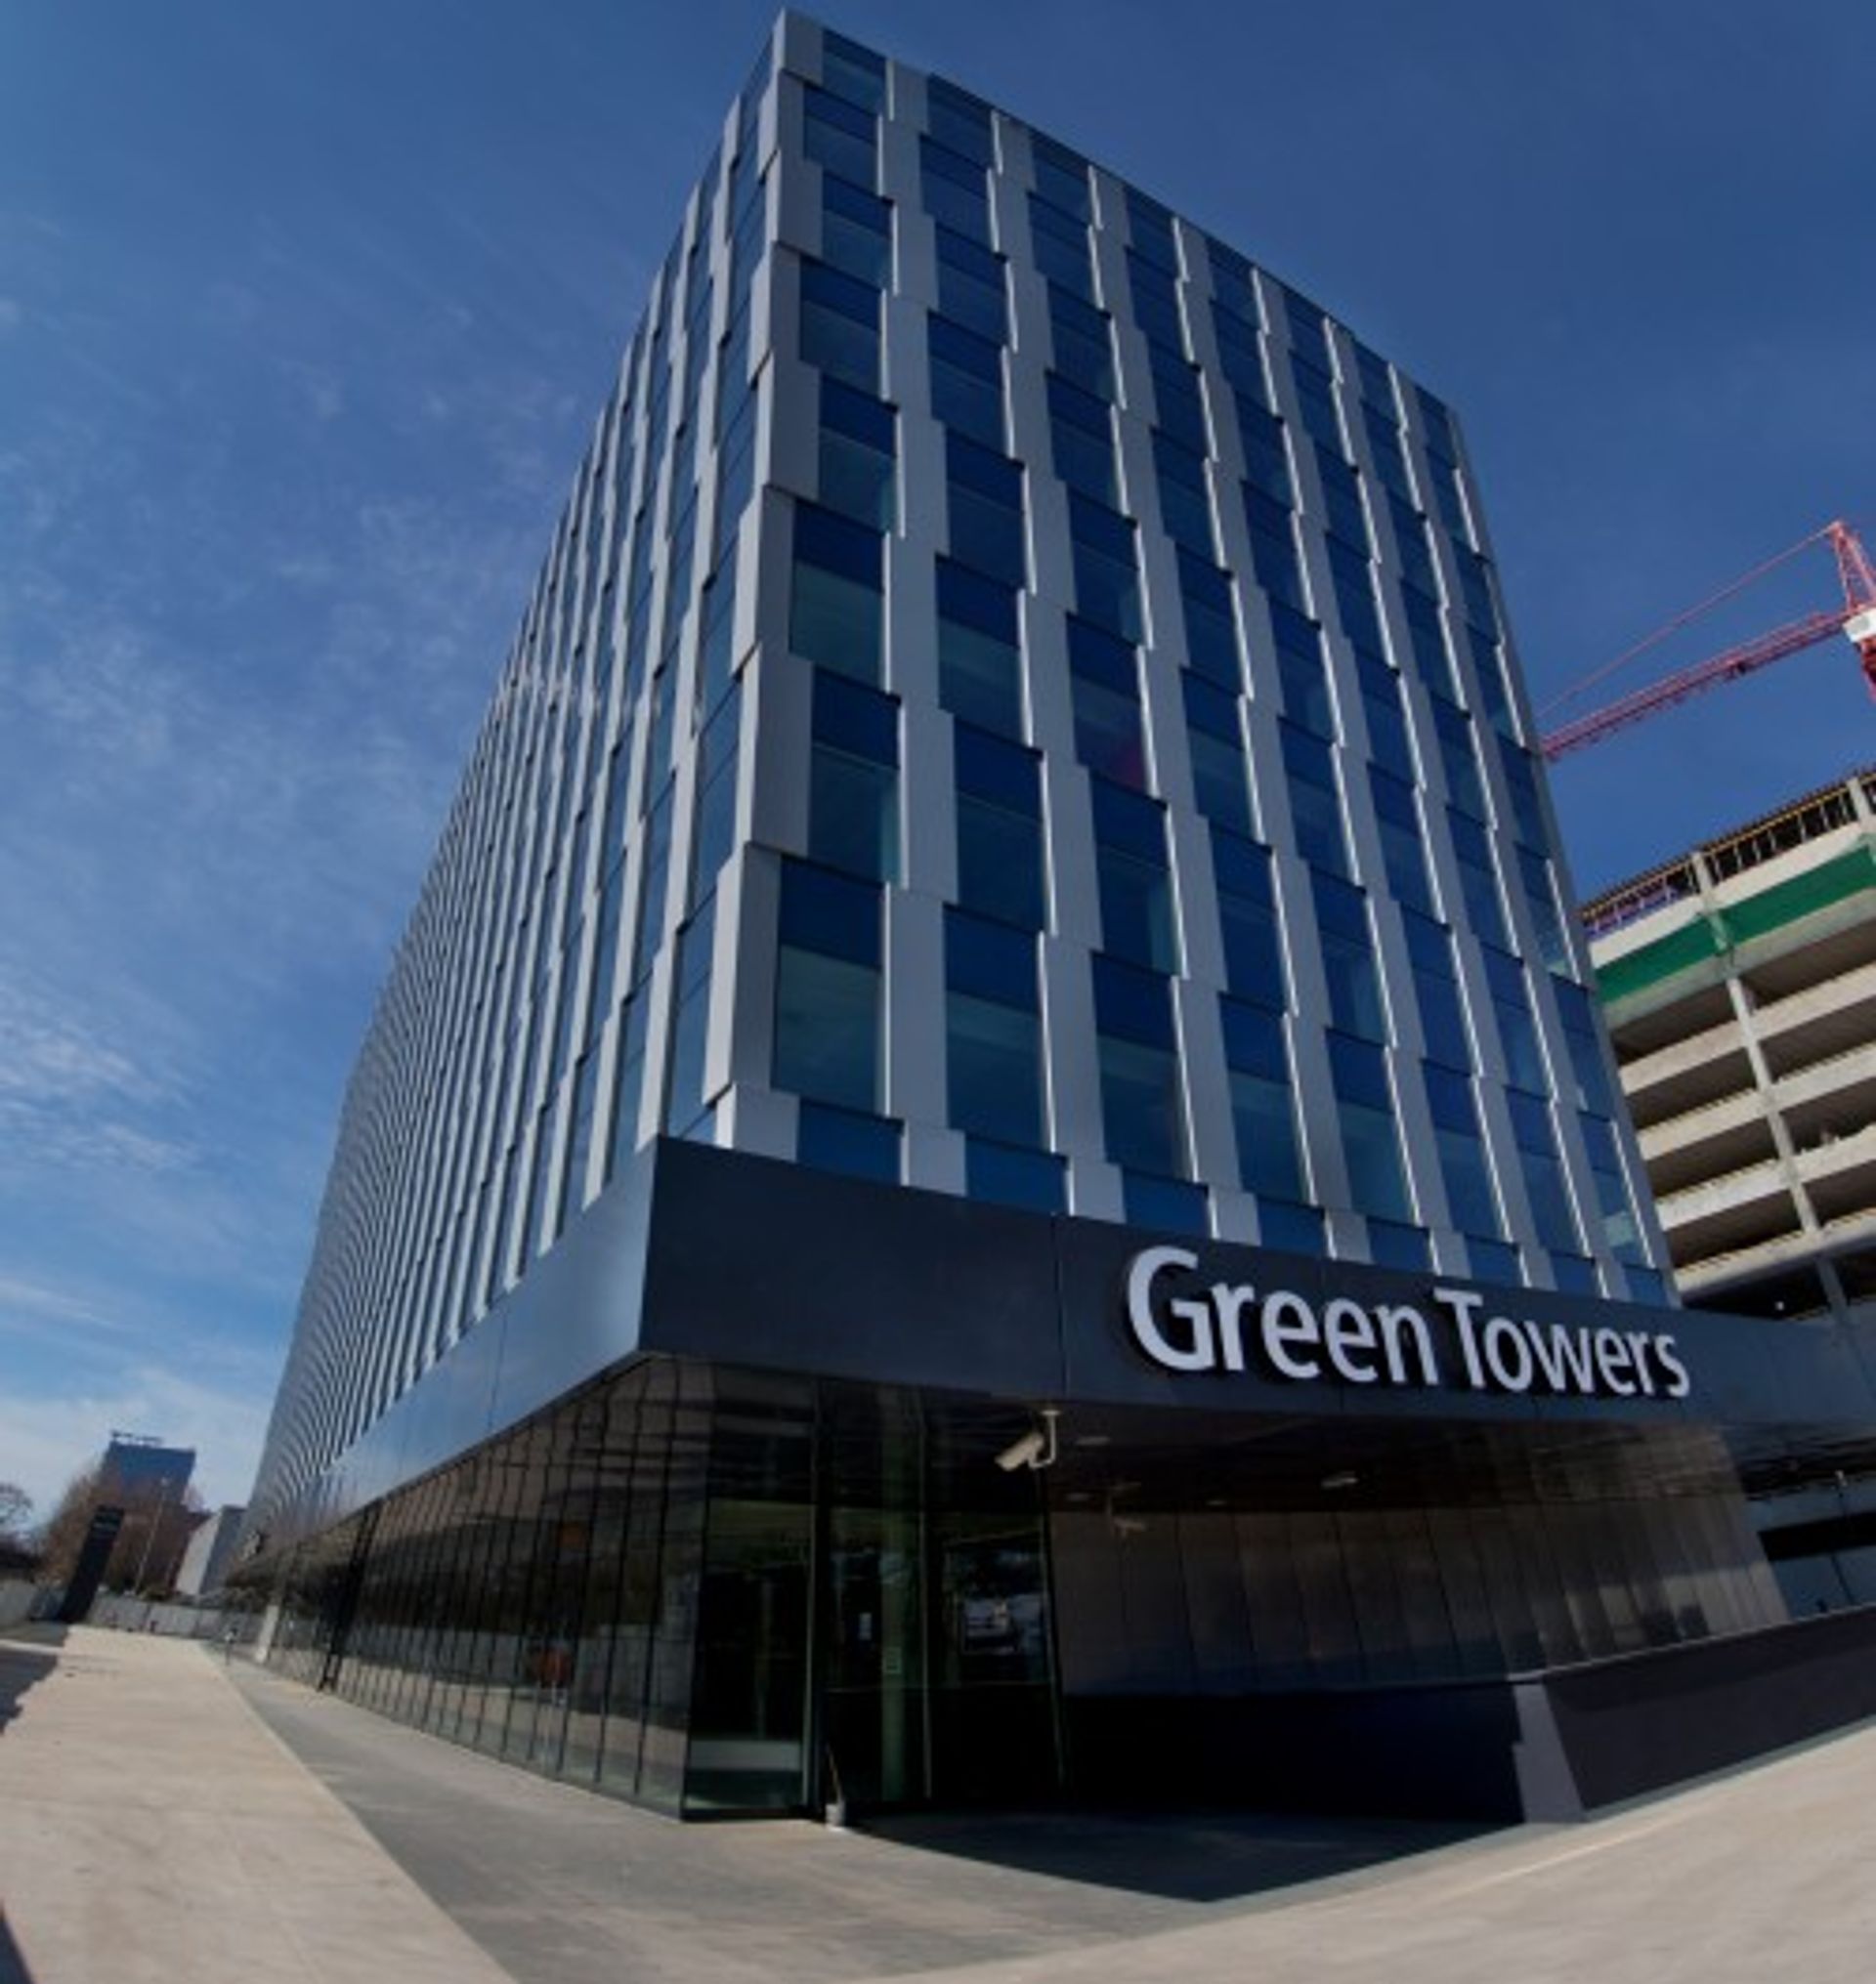  Kompleks biurowy Green Towers wynajęty w 95% jeszcze przed ukończeniem budowy